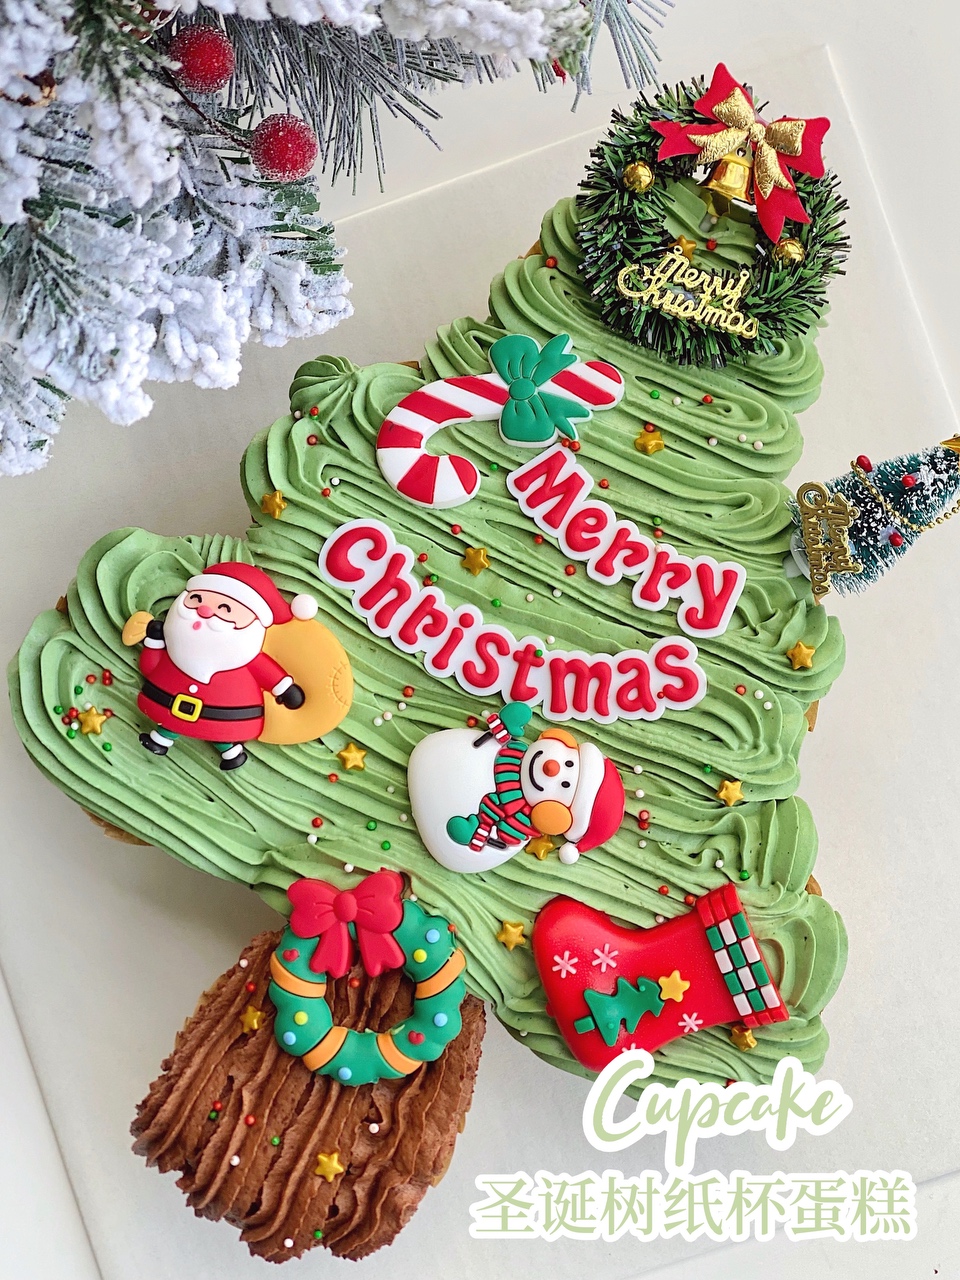 圣诞甜品🎄氛围感十足的圣诞树纸杯蛋糕🧁